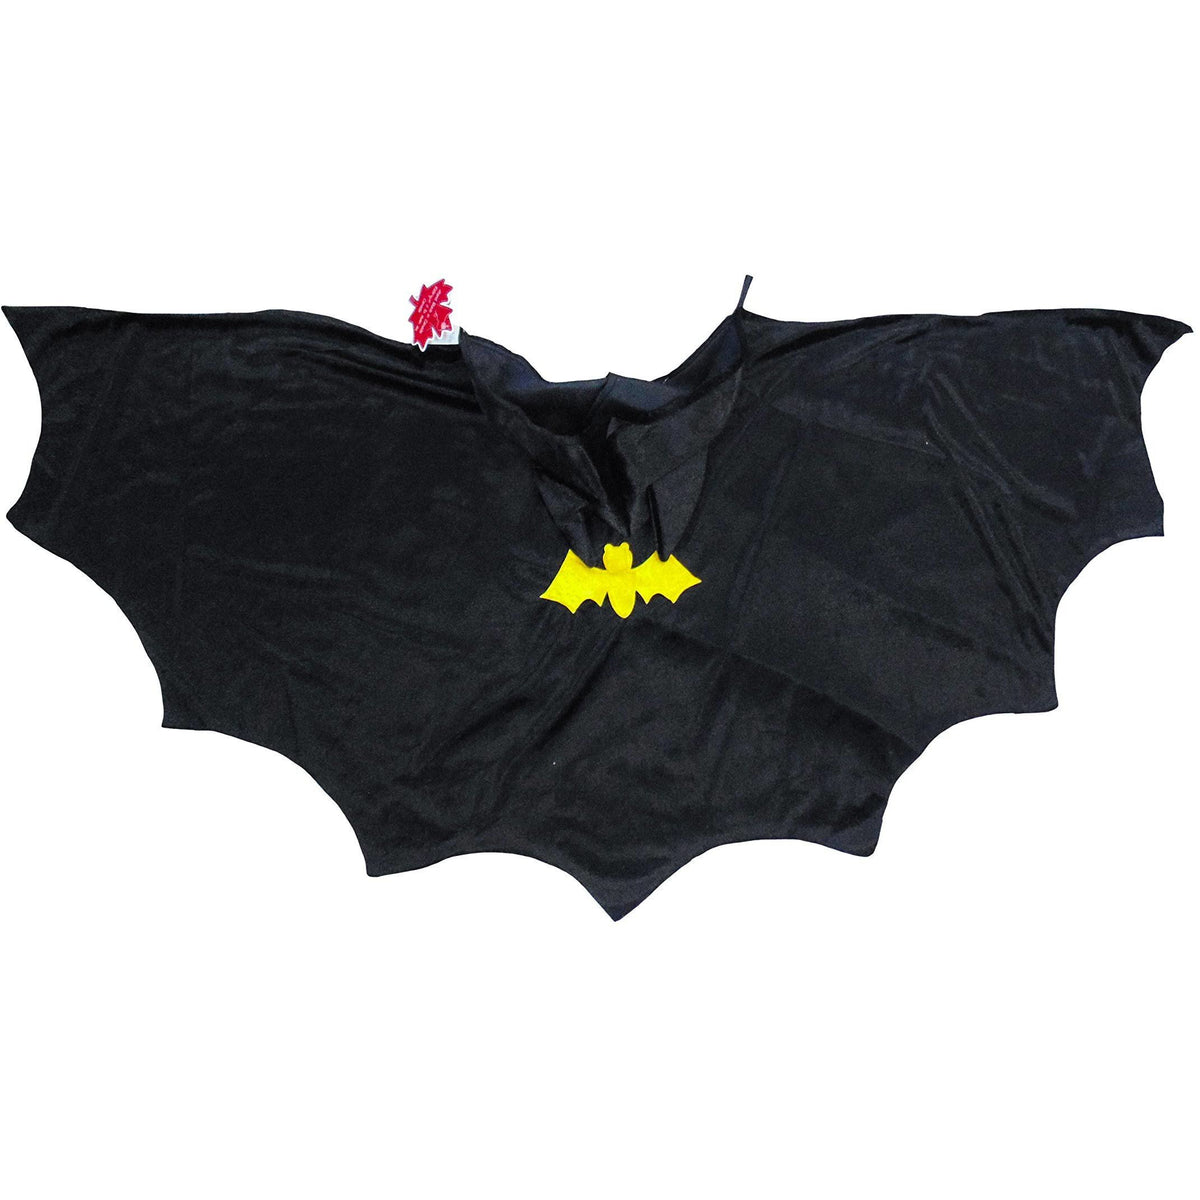 Hooded Bat Cape